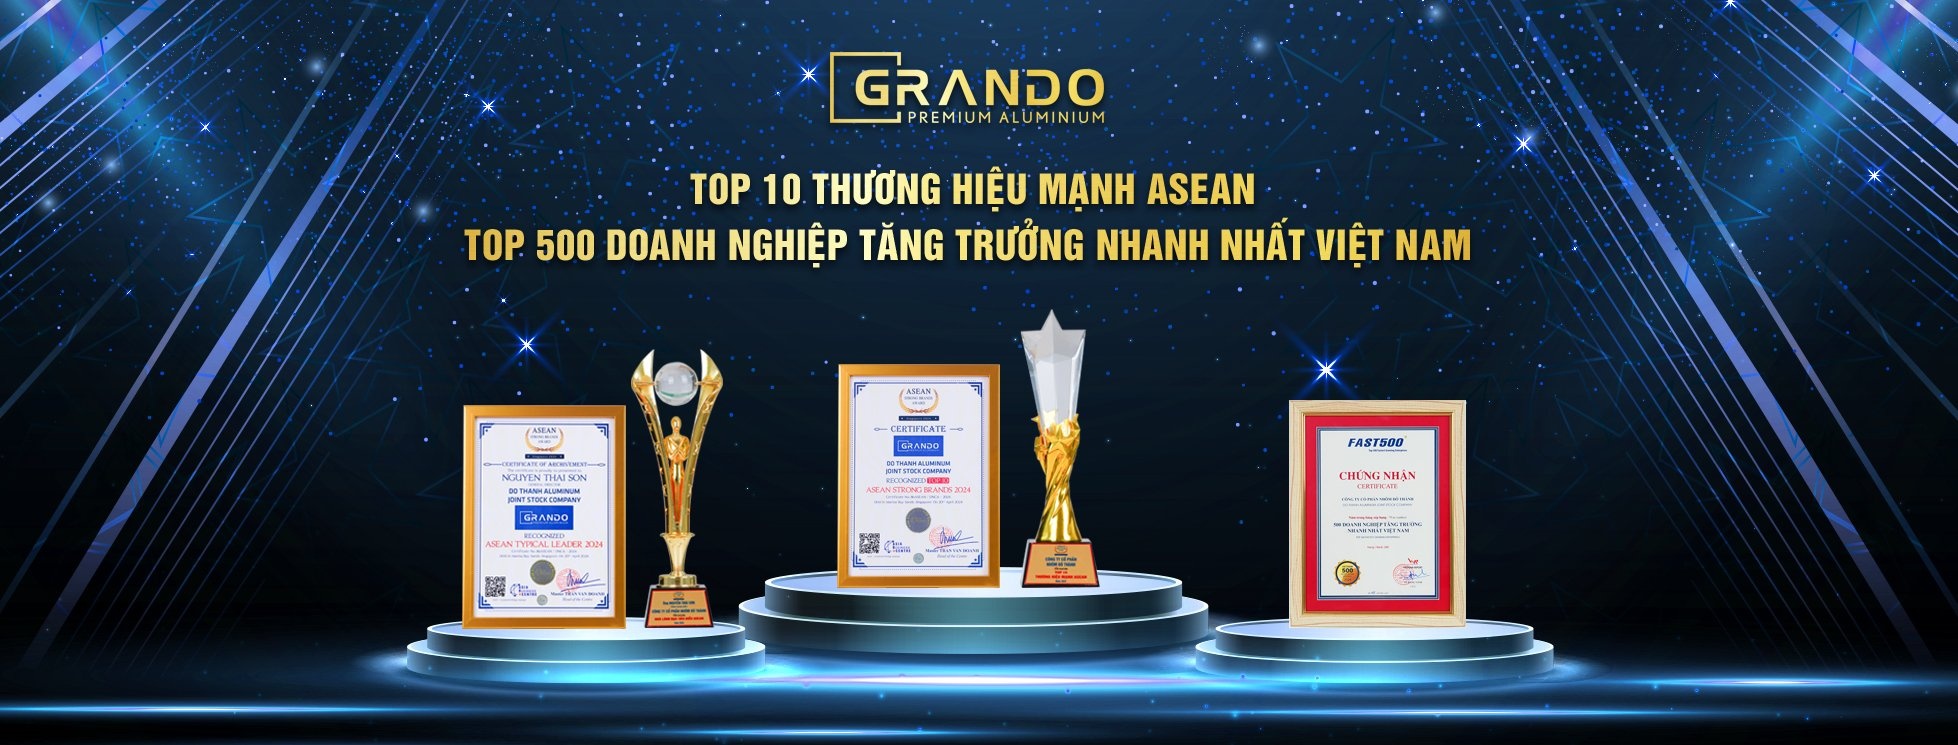 Grando đạt top 10 thương hiệu mạnh Asean - 500 DN tăng trưởng nhanh nhất Việt Nam